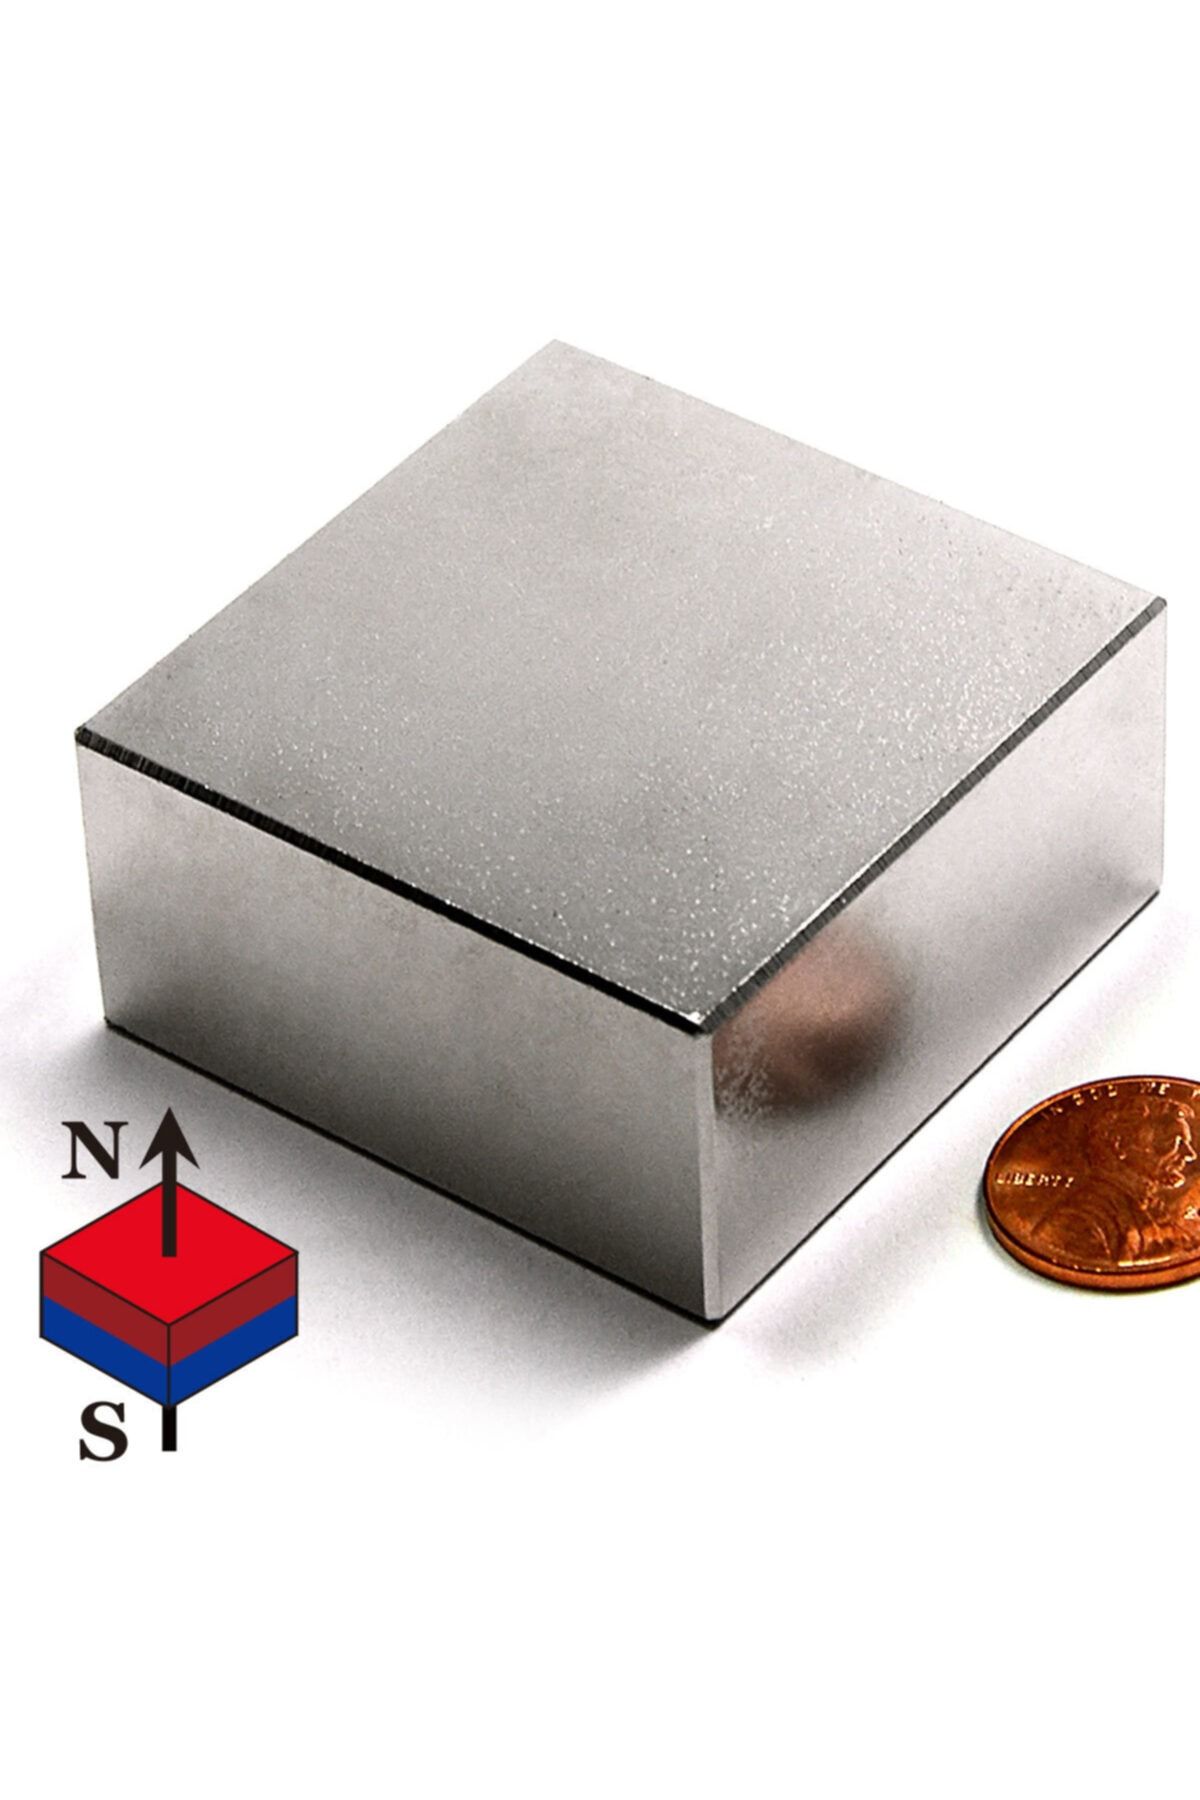 Dünya Magnet 50mm X En 50mm X Kalınlık 25mm Çok Güçlü Büyük Neodyum Mıknatıs